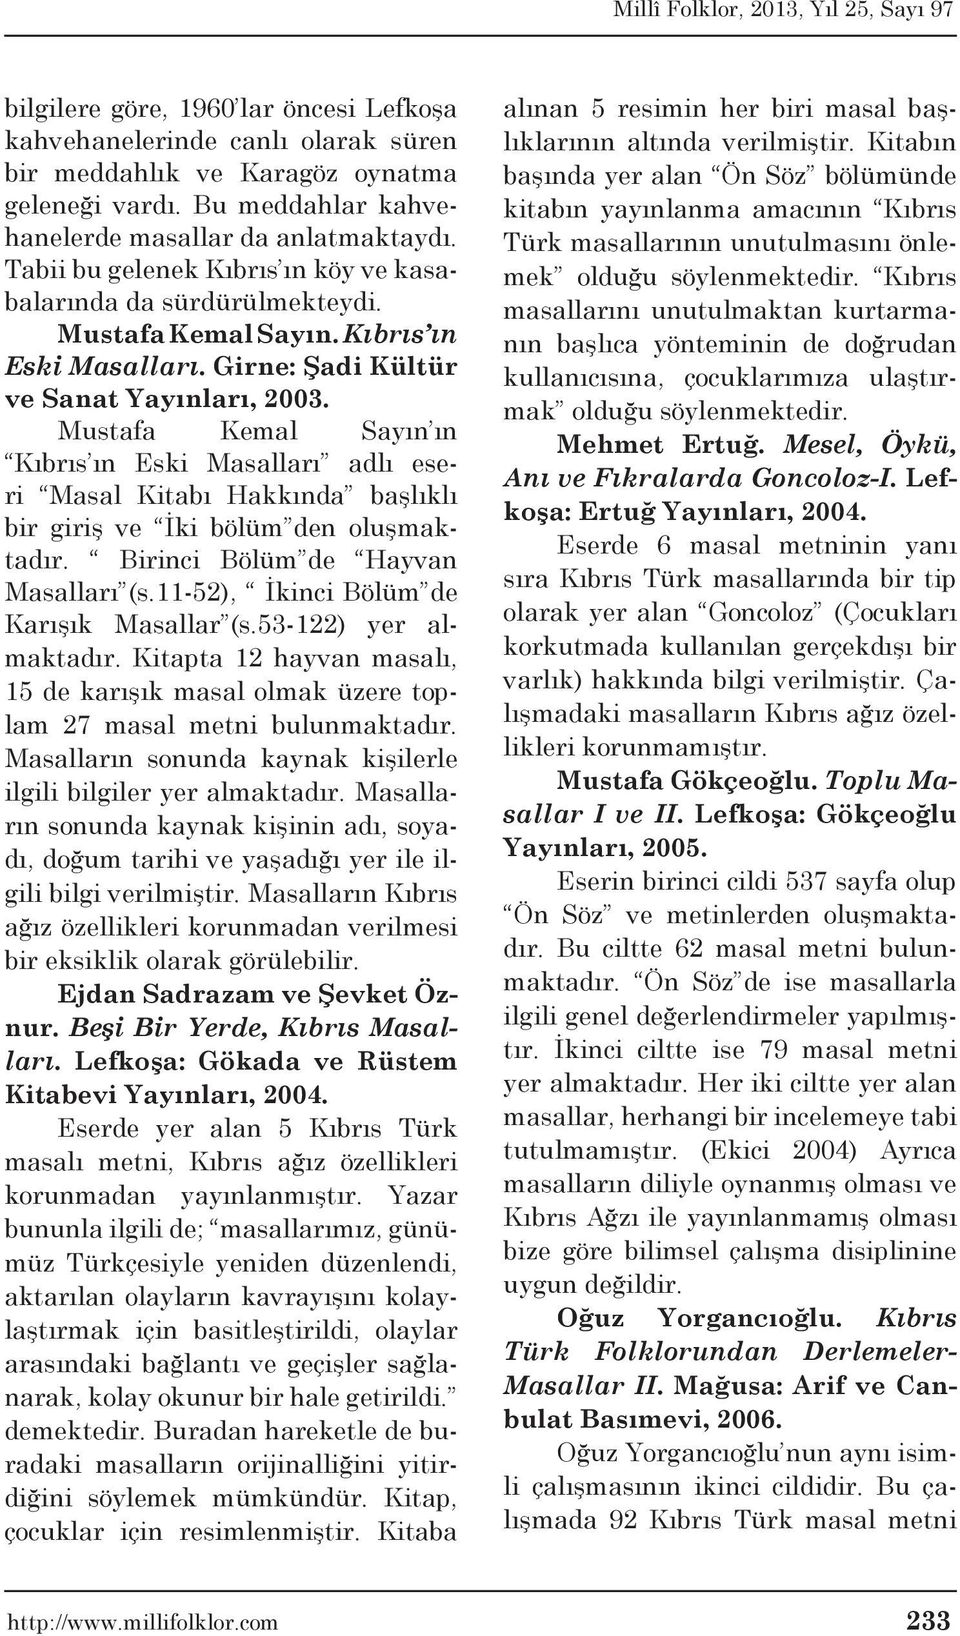 Mustafa Kemal Sayın ın Kıbrıs ın Eski Masalları adlı eseri Masal Kitabı Hakkında başlıklı bir giriş ve İki bölüm den oluşmaktadır. Birinci Bölüm de Hayvan Masalları (s.